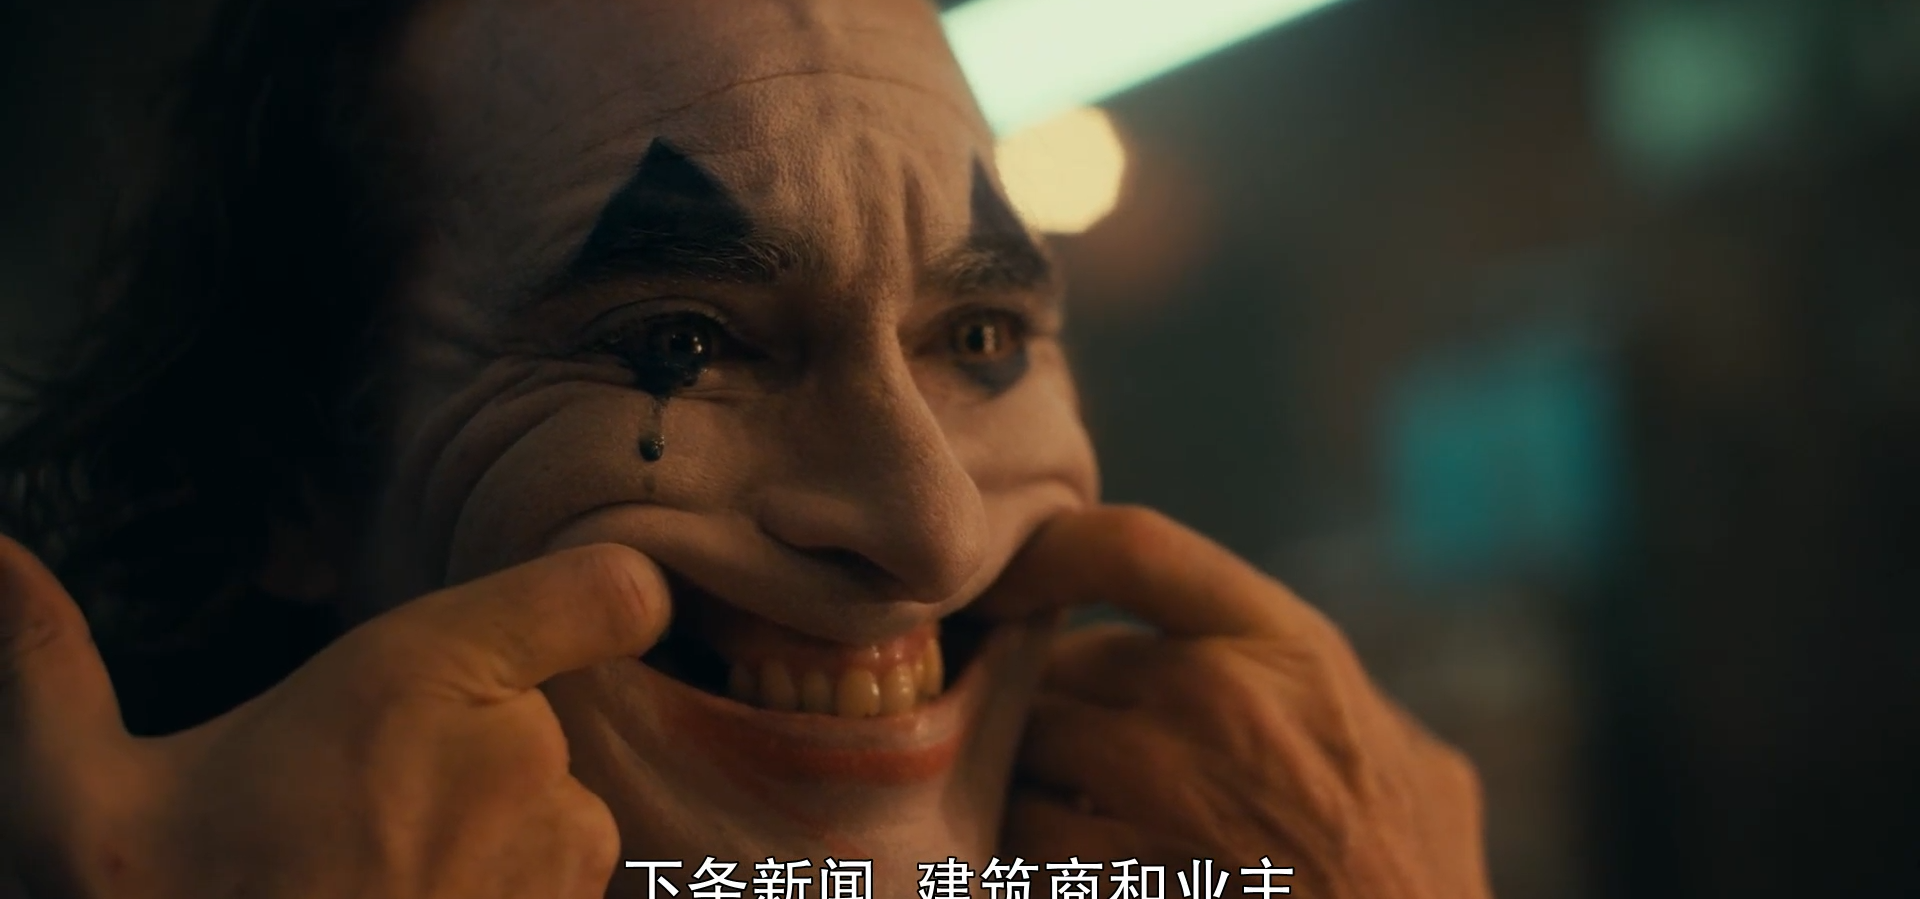 「佳片解析」《小丑Joker》哥谭之王的诞生-图文详细解析